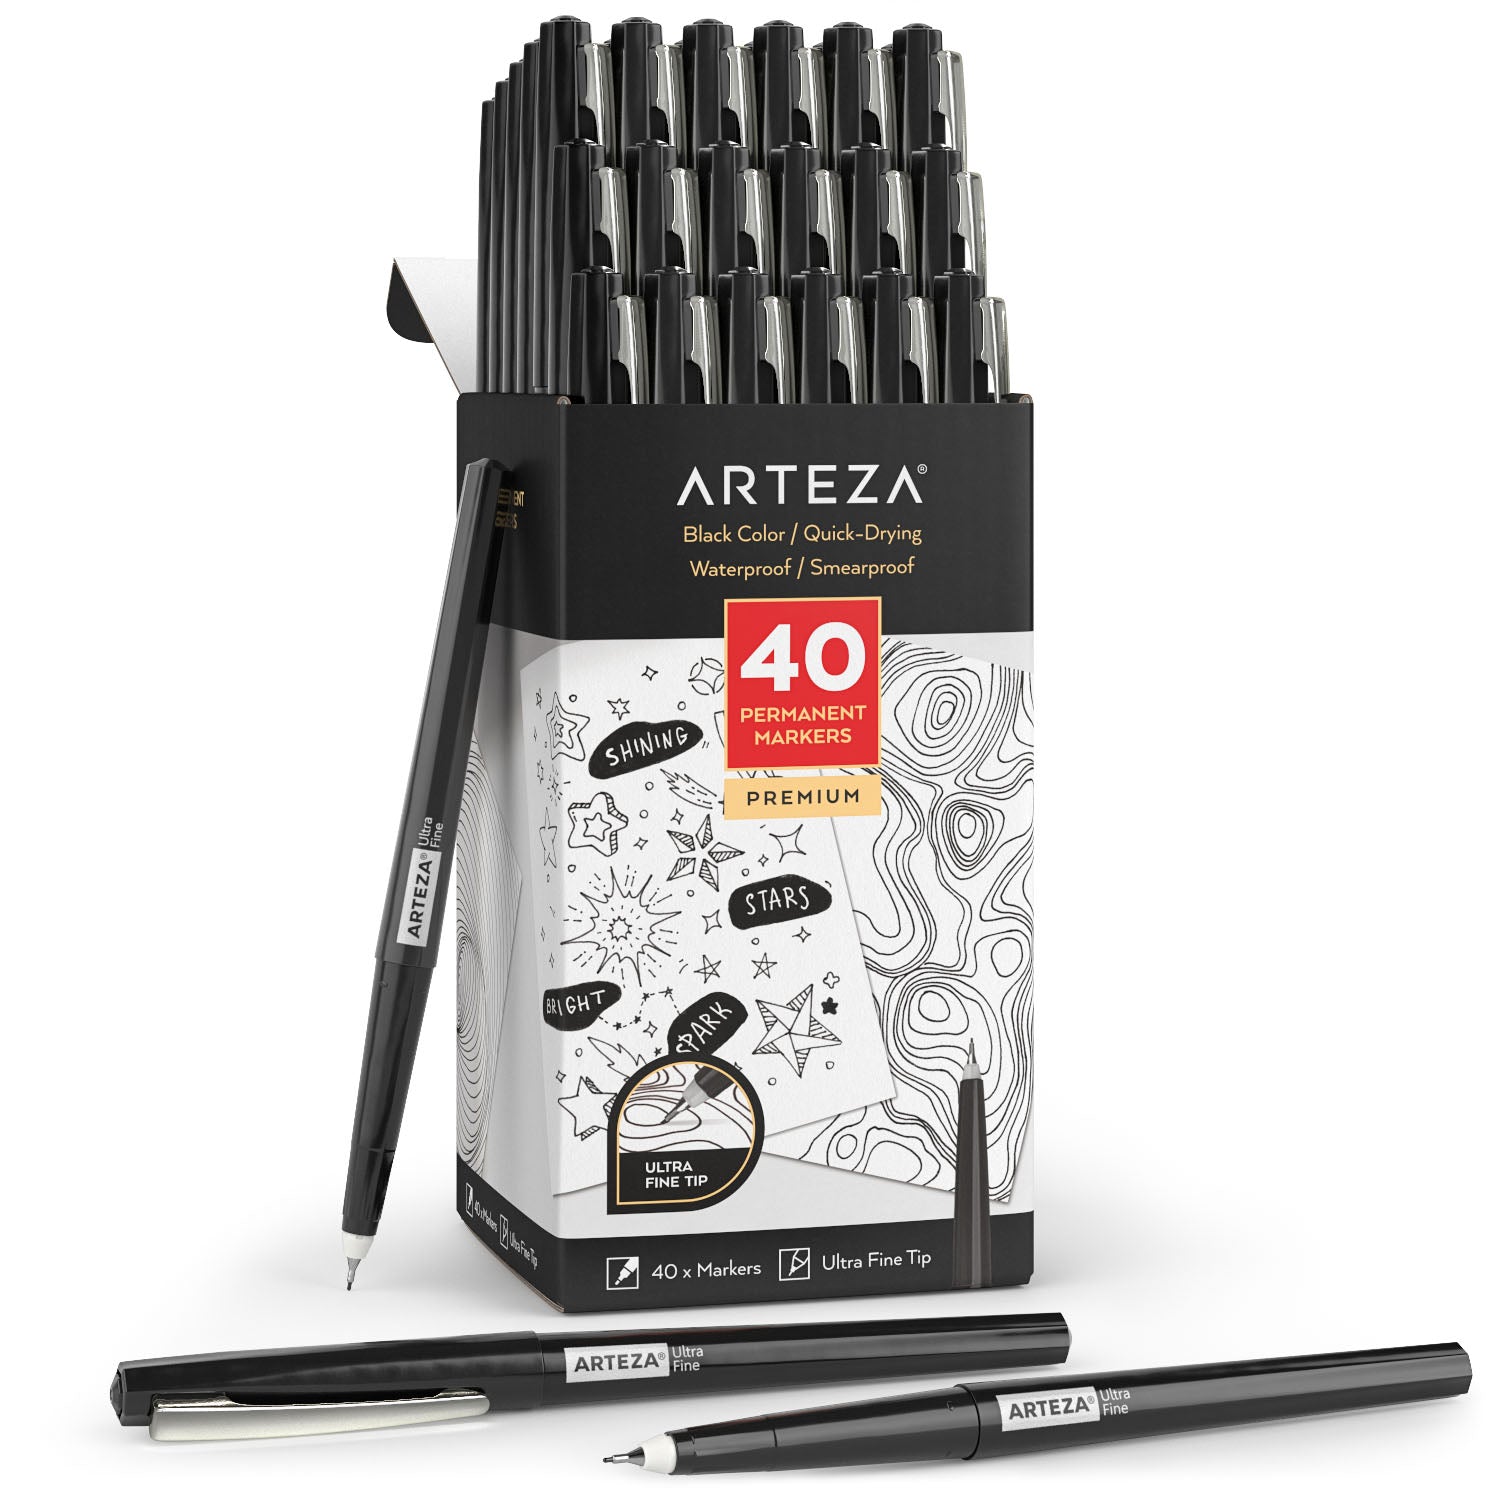 TUL Fine Liner Felt Tip Pen Ultra Fine 0.4 mm Silver Barrel Assorted Ink  Colors Pack Of 12 Pens - Office Depot